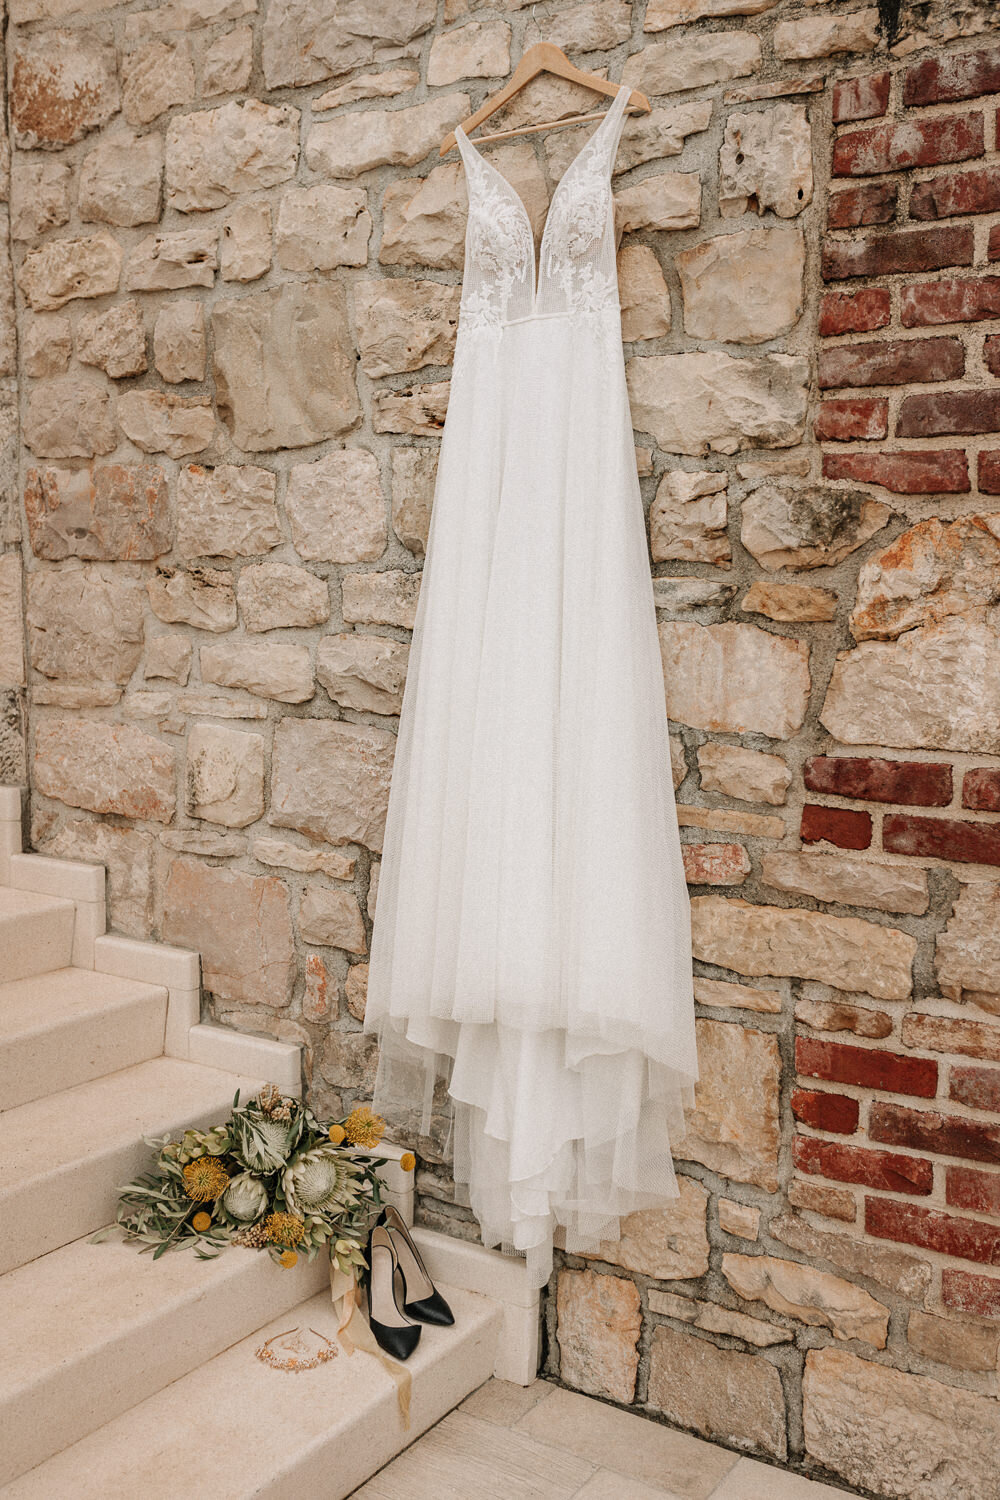 Brautkleid hängend an einer Wand